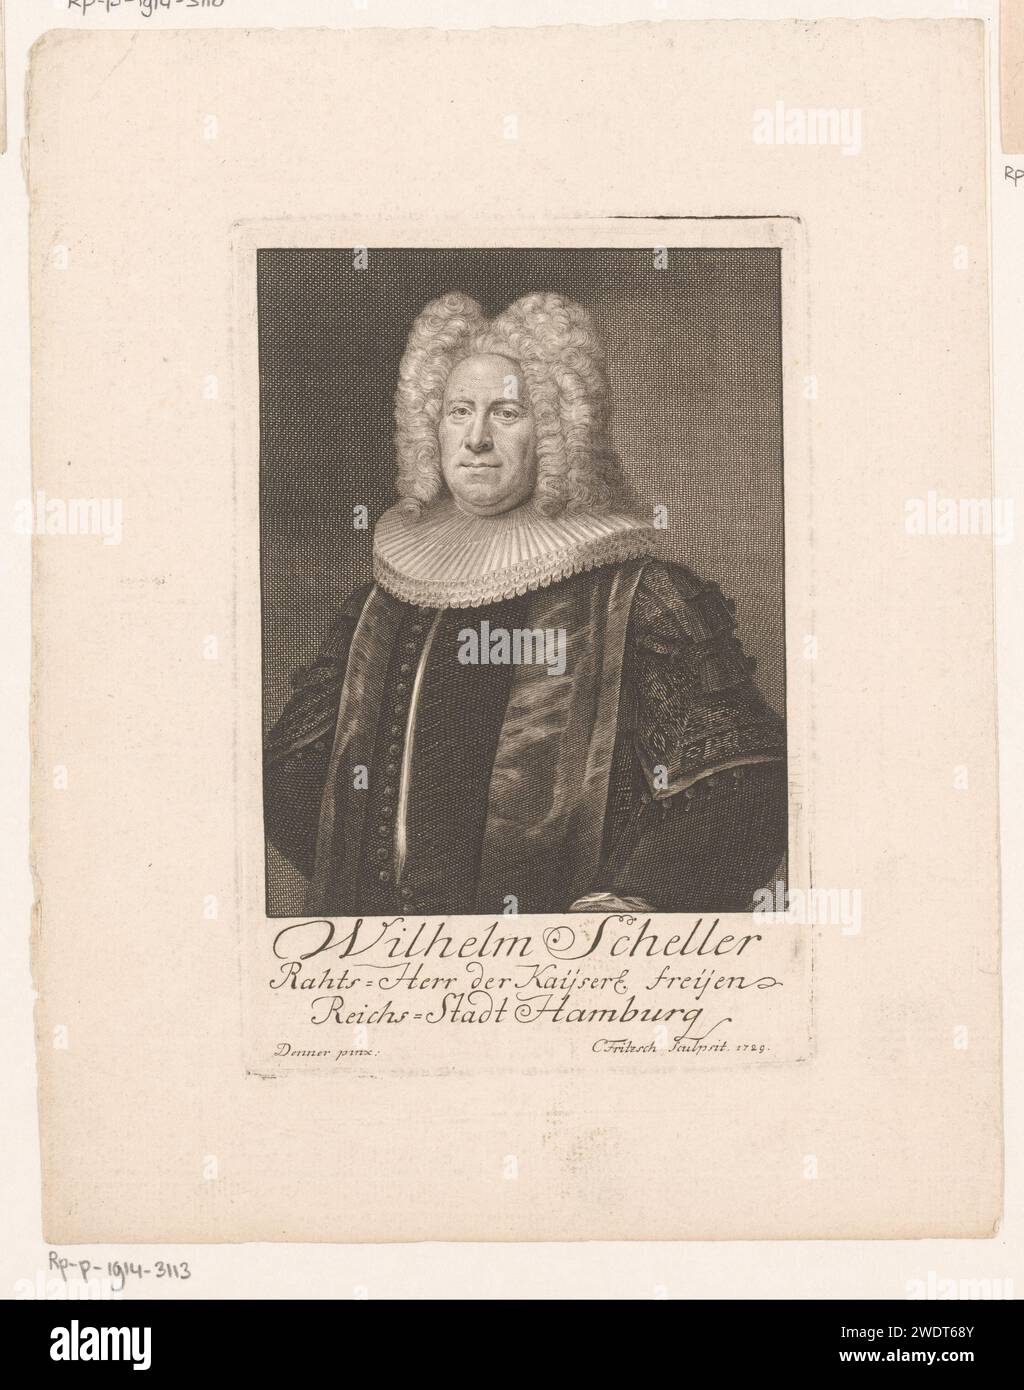 PortraT van Wilhelm Scheller, Christian Fritzsch, d'après Balthasar Denner, 1729 gravures sur papier gravant des personnages historiques Banque D'Images